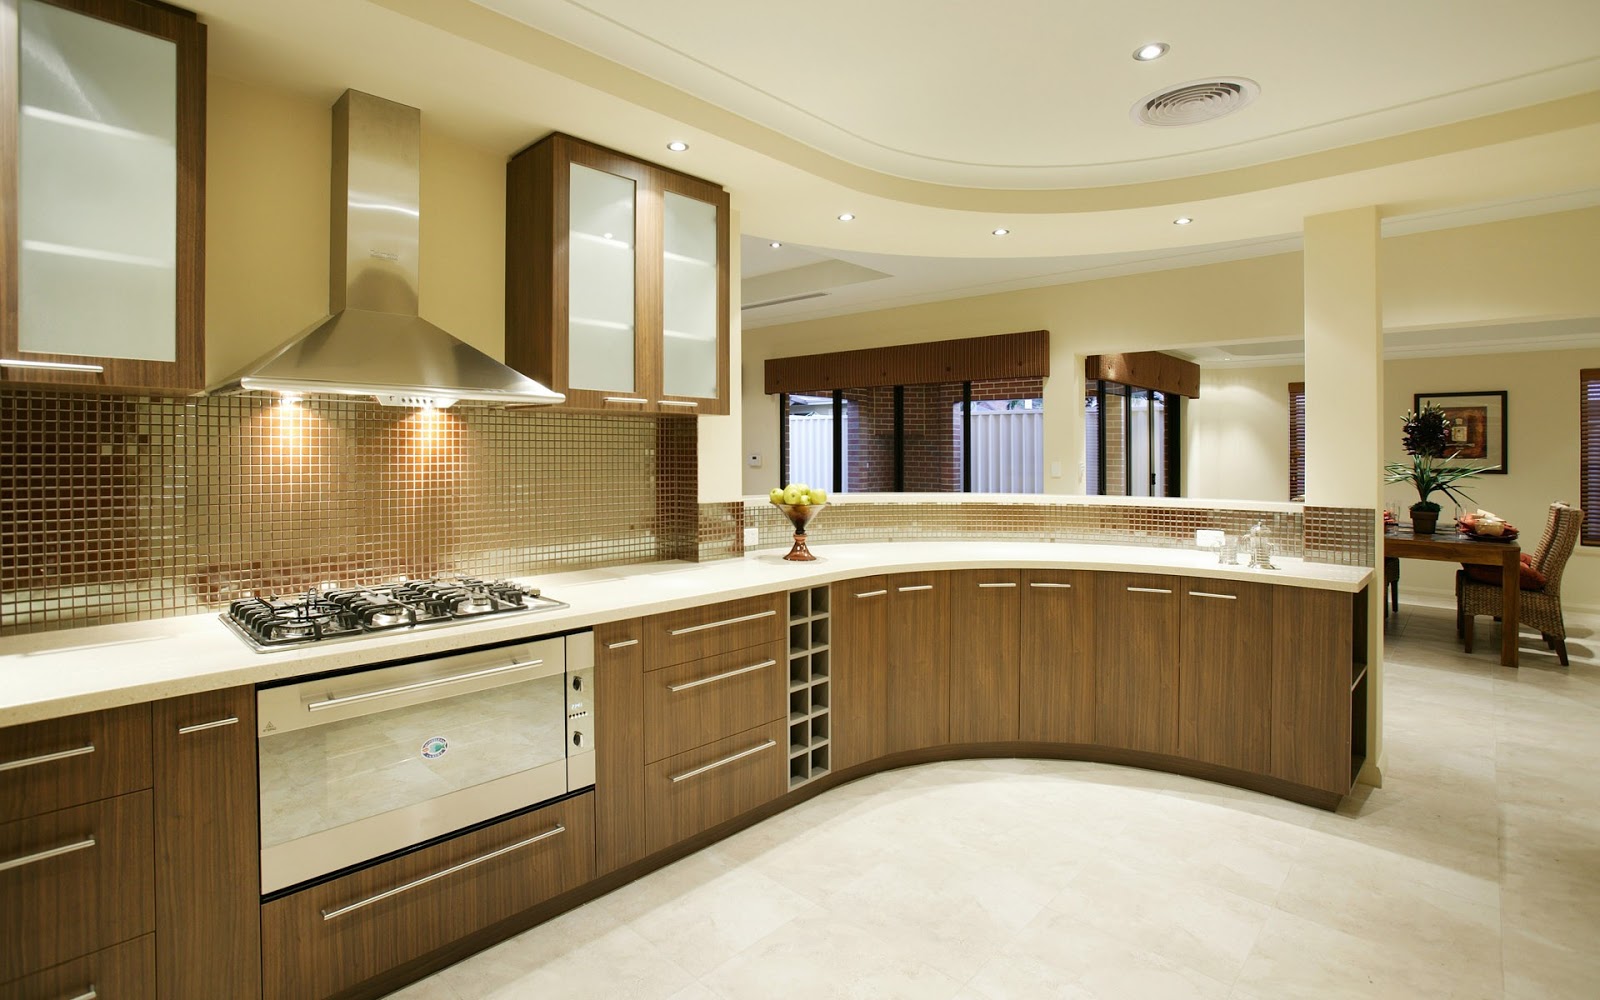 traditional kitchen interior design idea